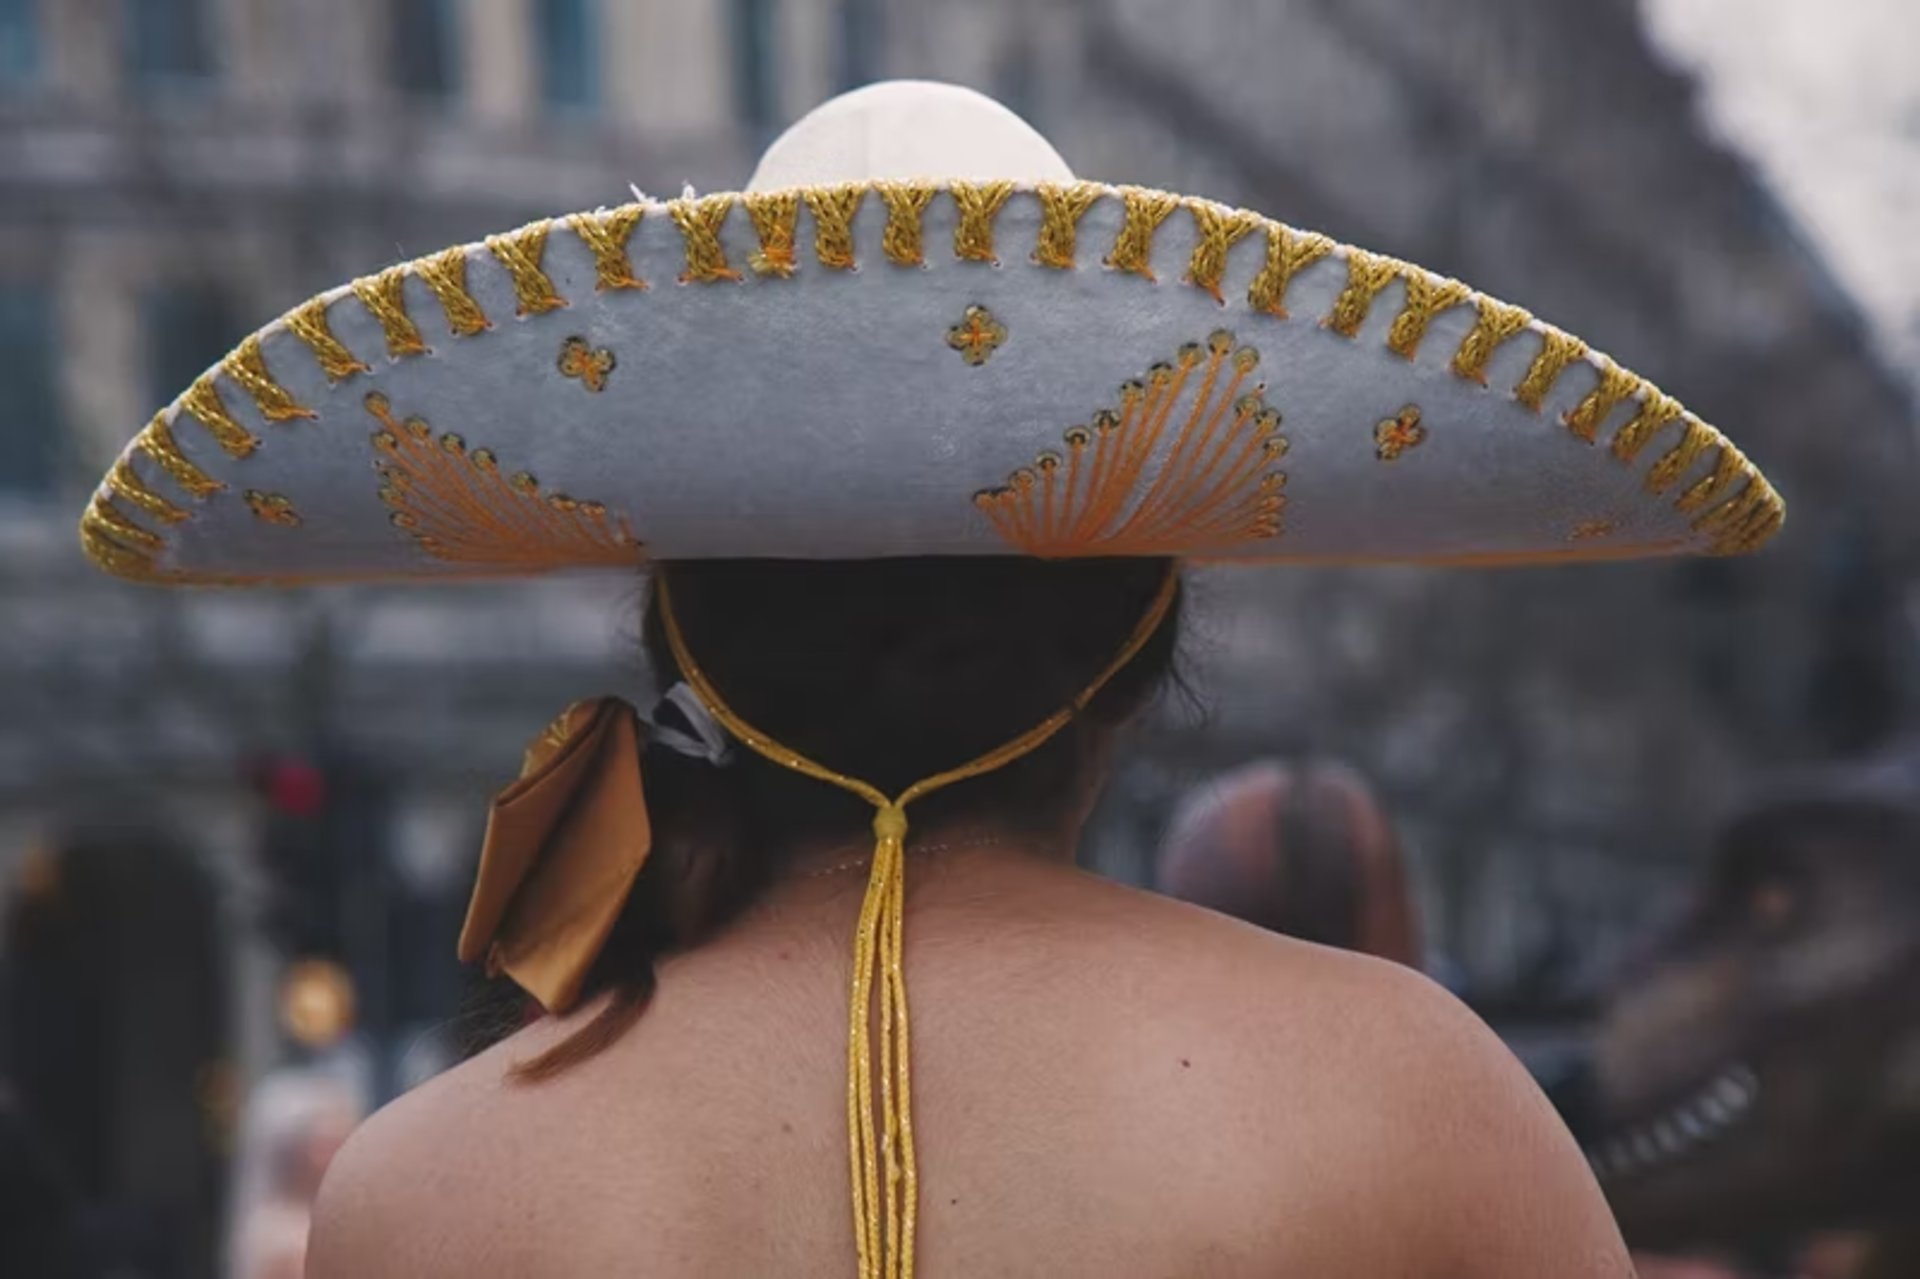 Sombrero Fest 2023 in Texas Dates